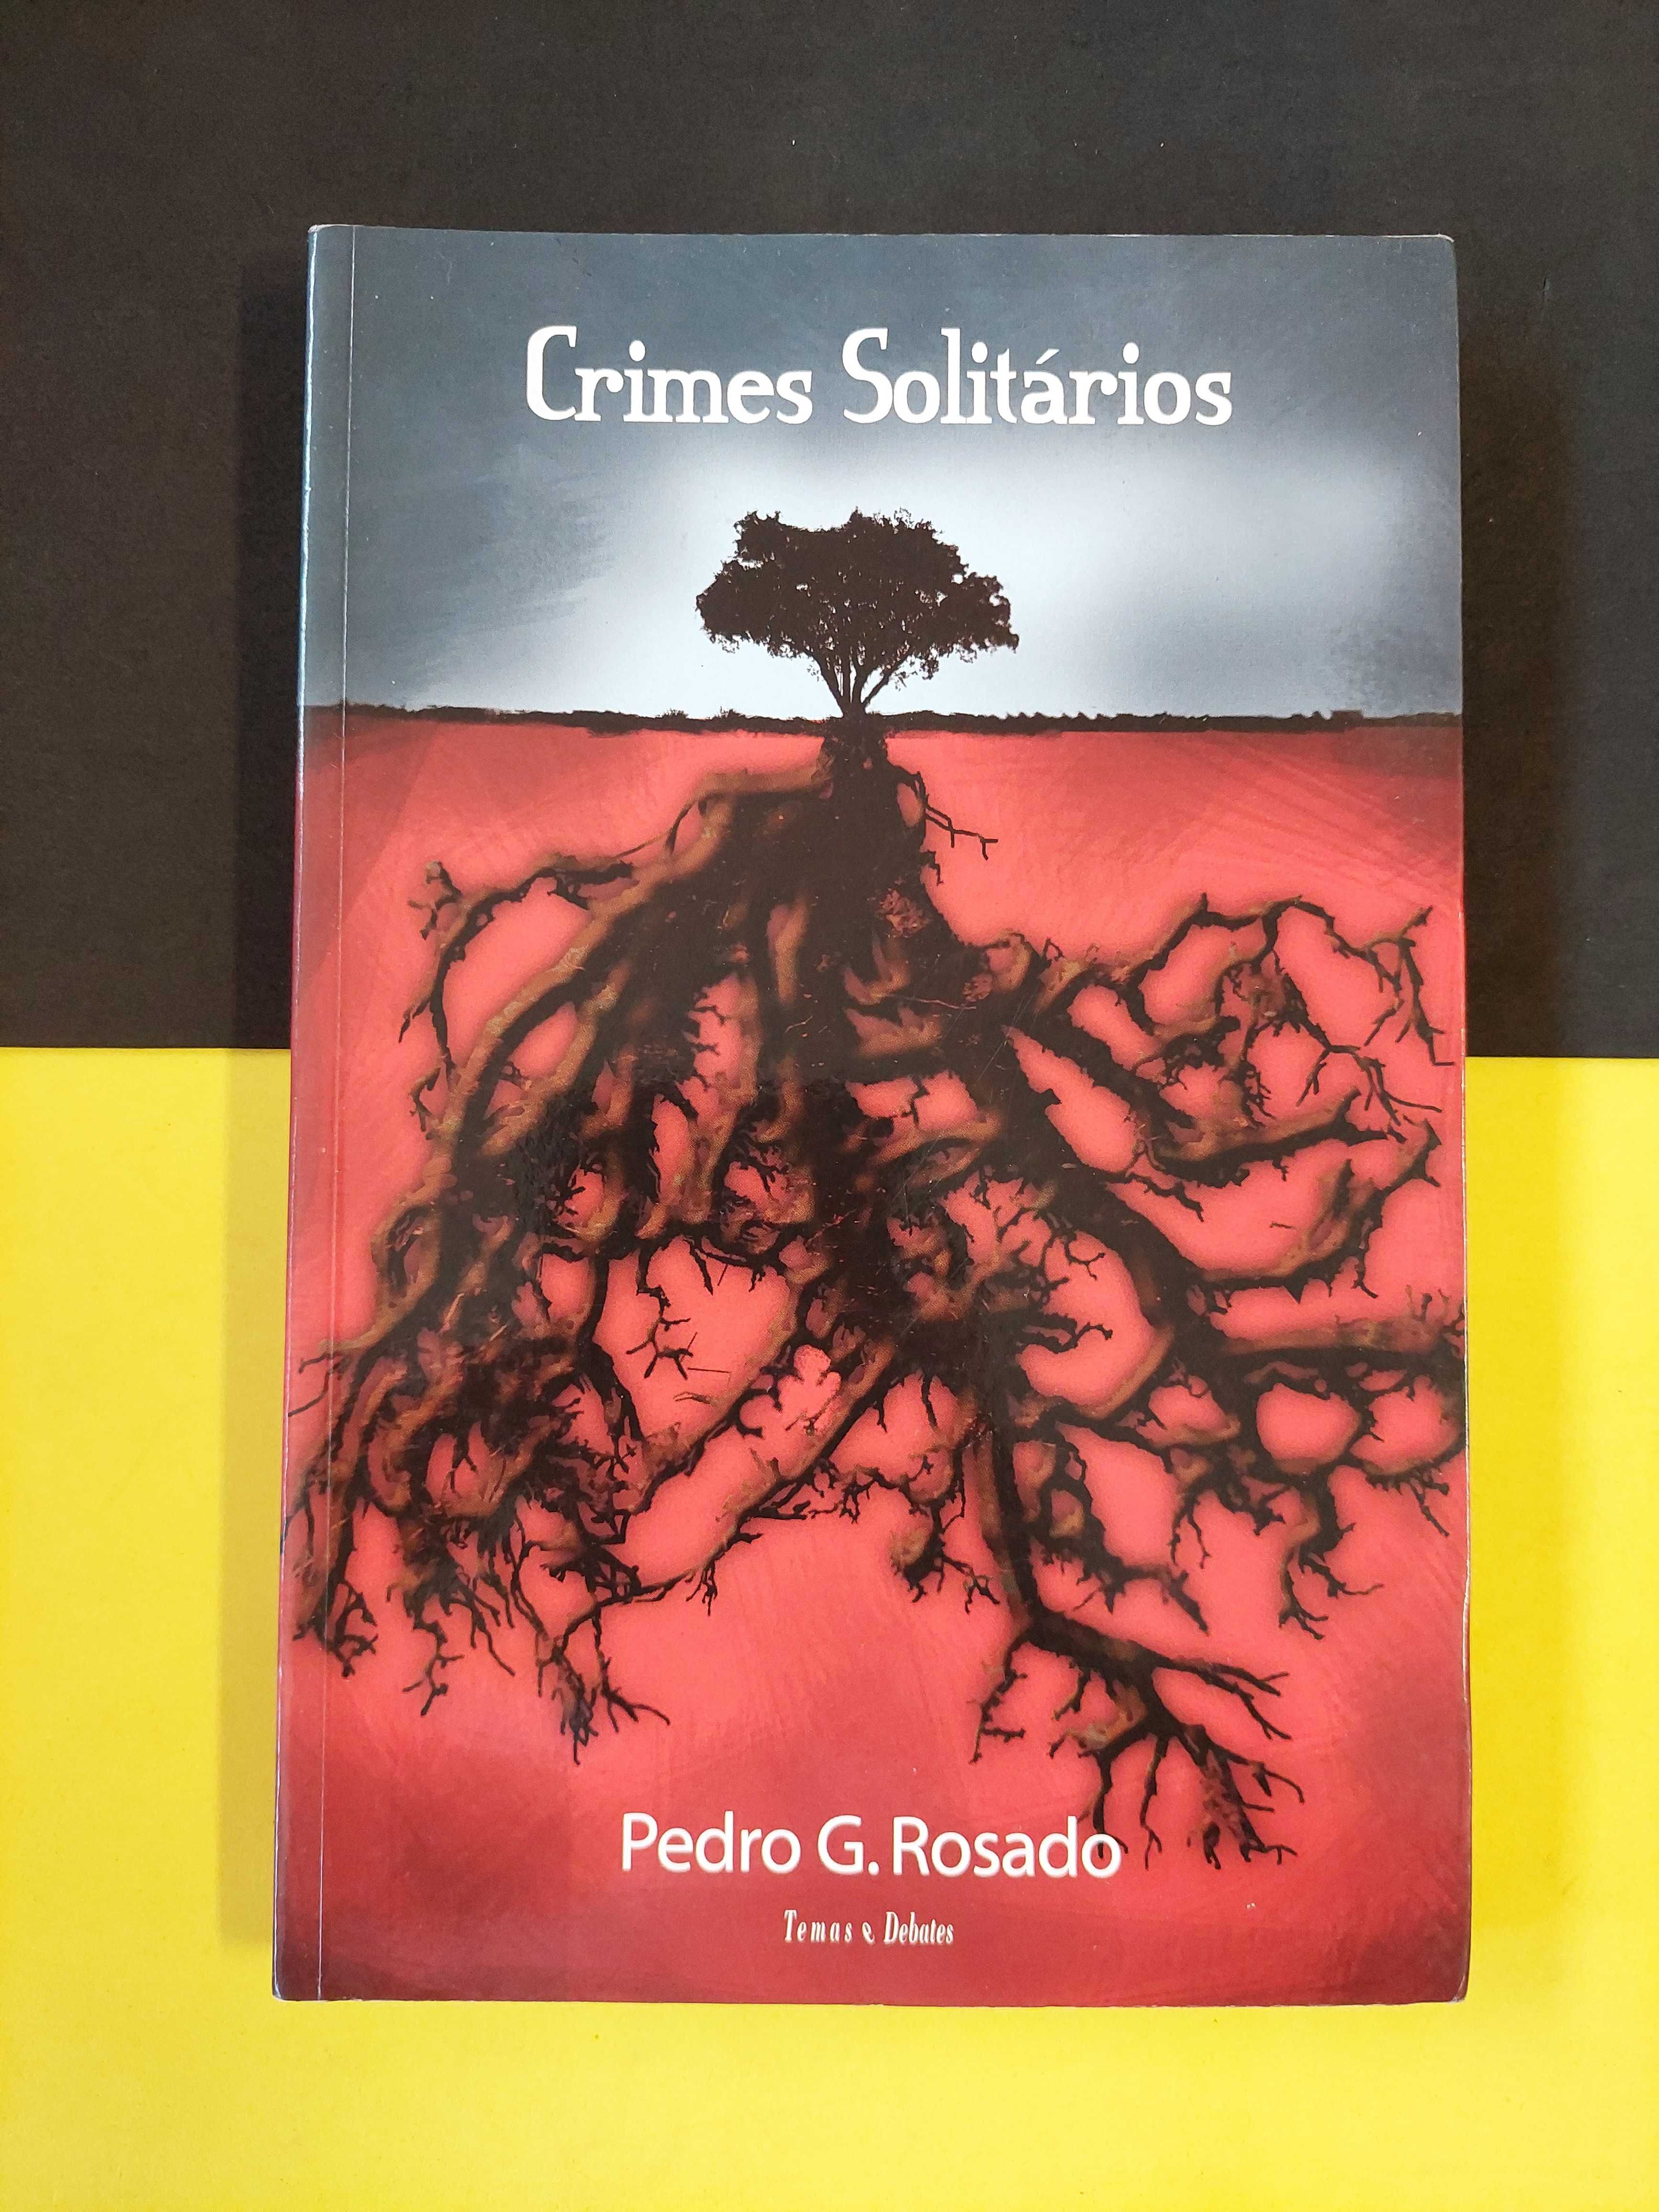 Pedro G. Rosado - Crimes solitários